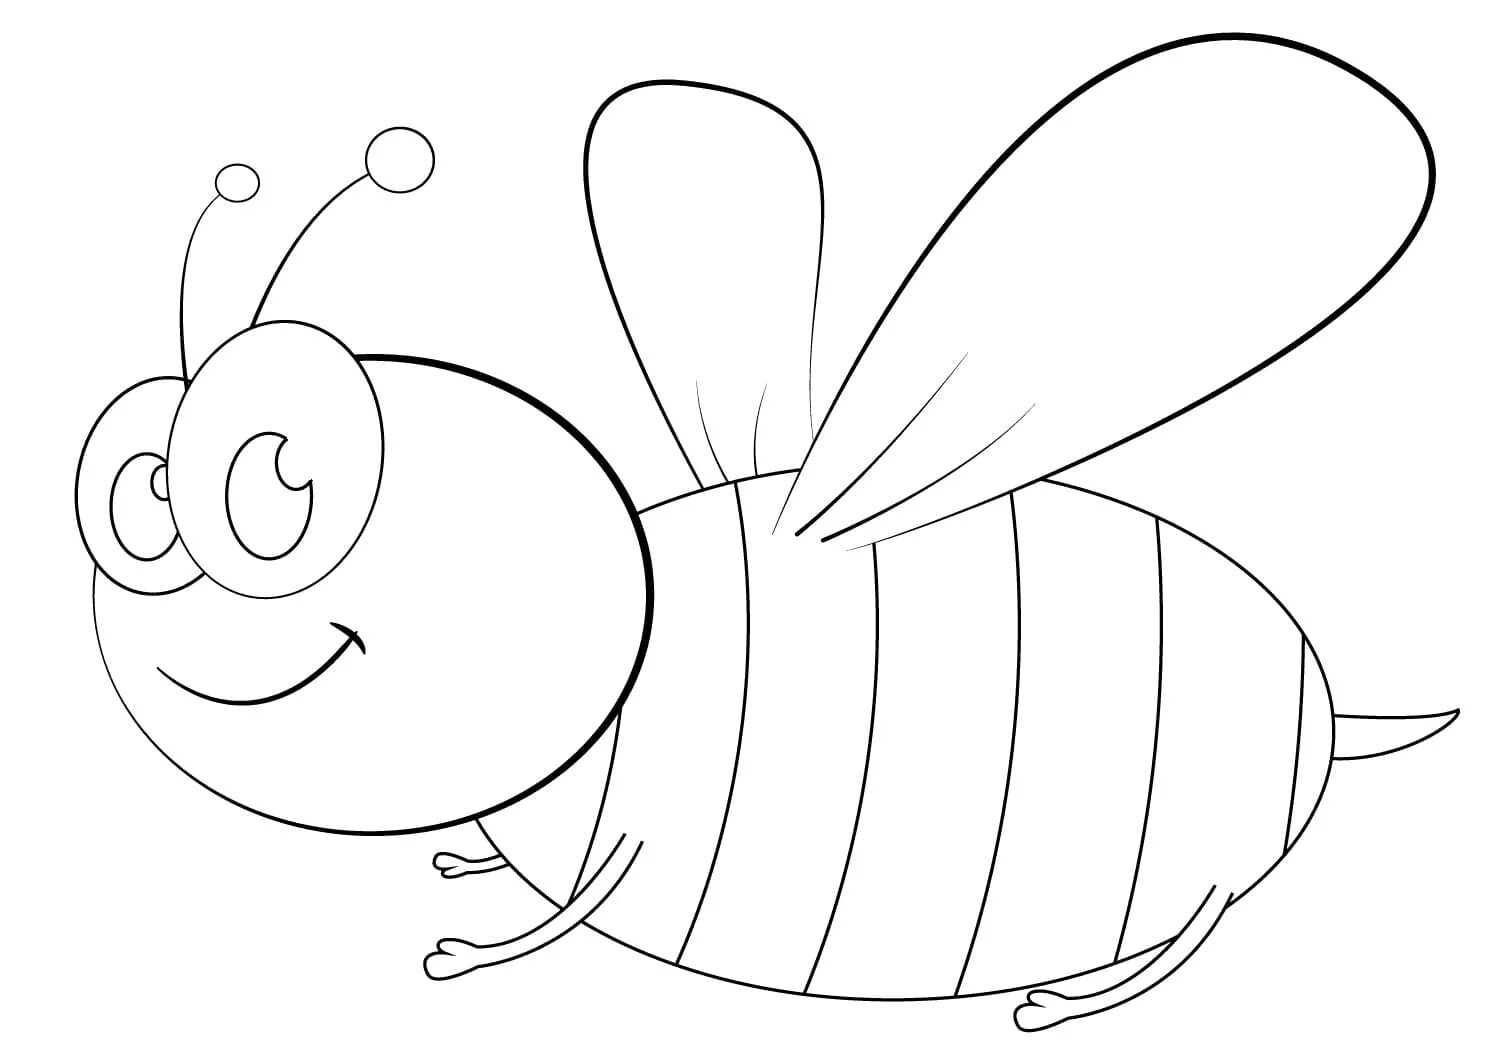 Пчела раскраска. Раскраска пчёлка для детей. Пчела раскраска для детей. Пчелка раскраска для малышей. Раскраска насекомое ребенку 4 года